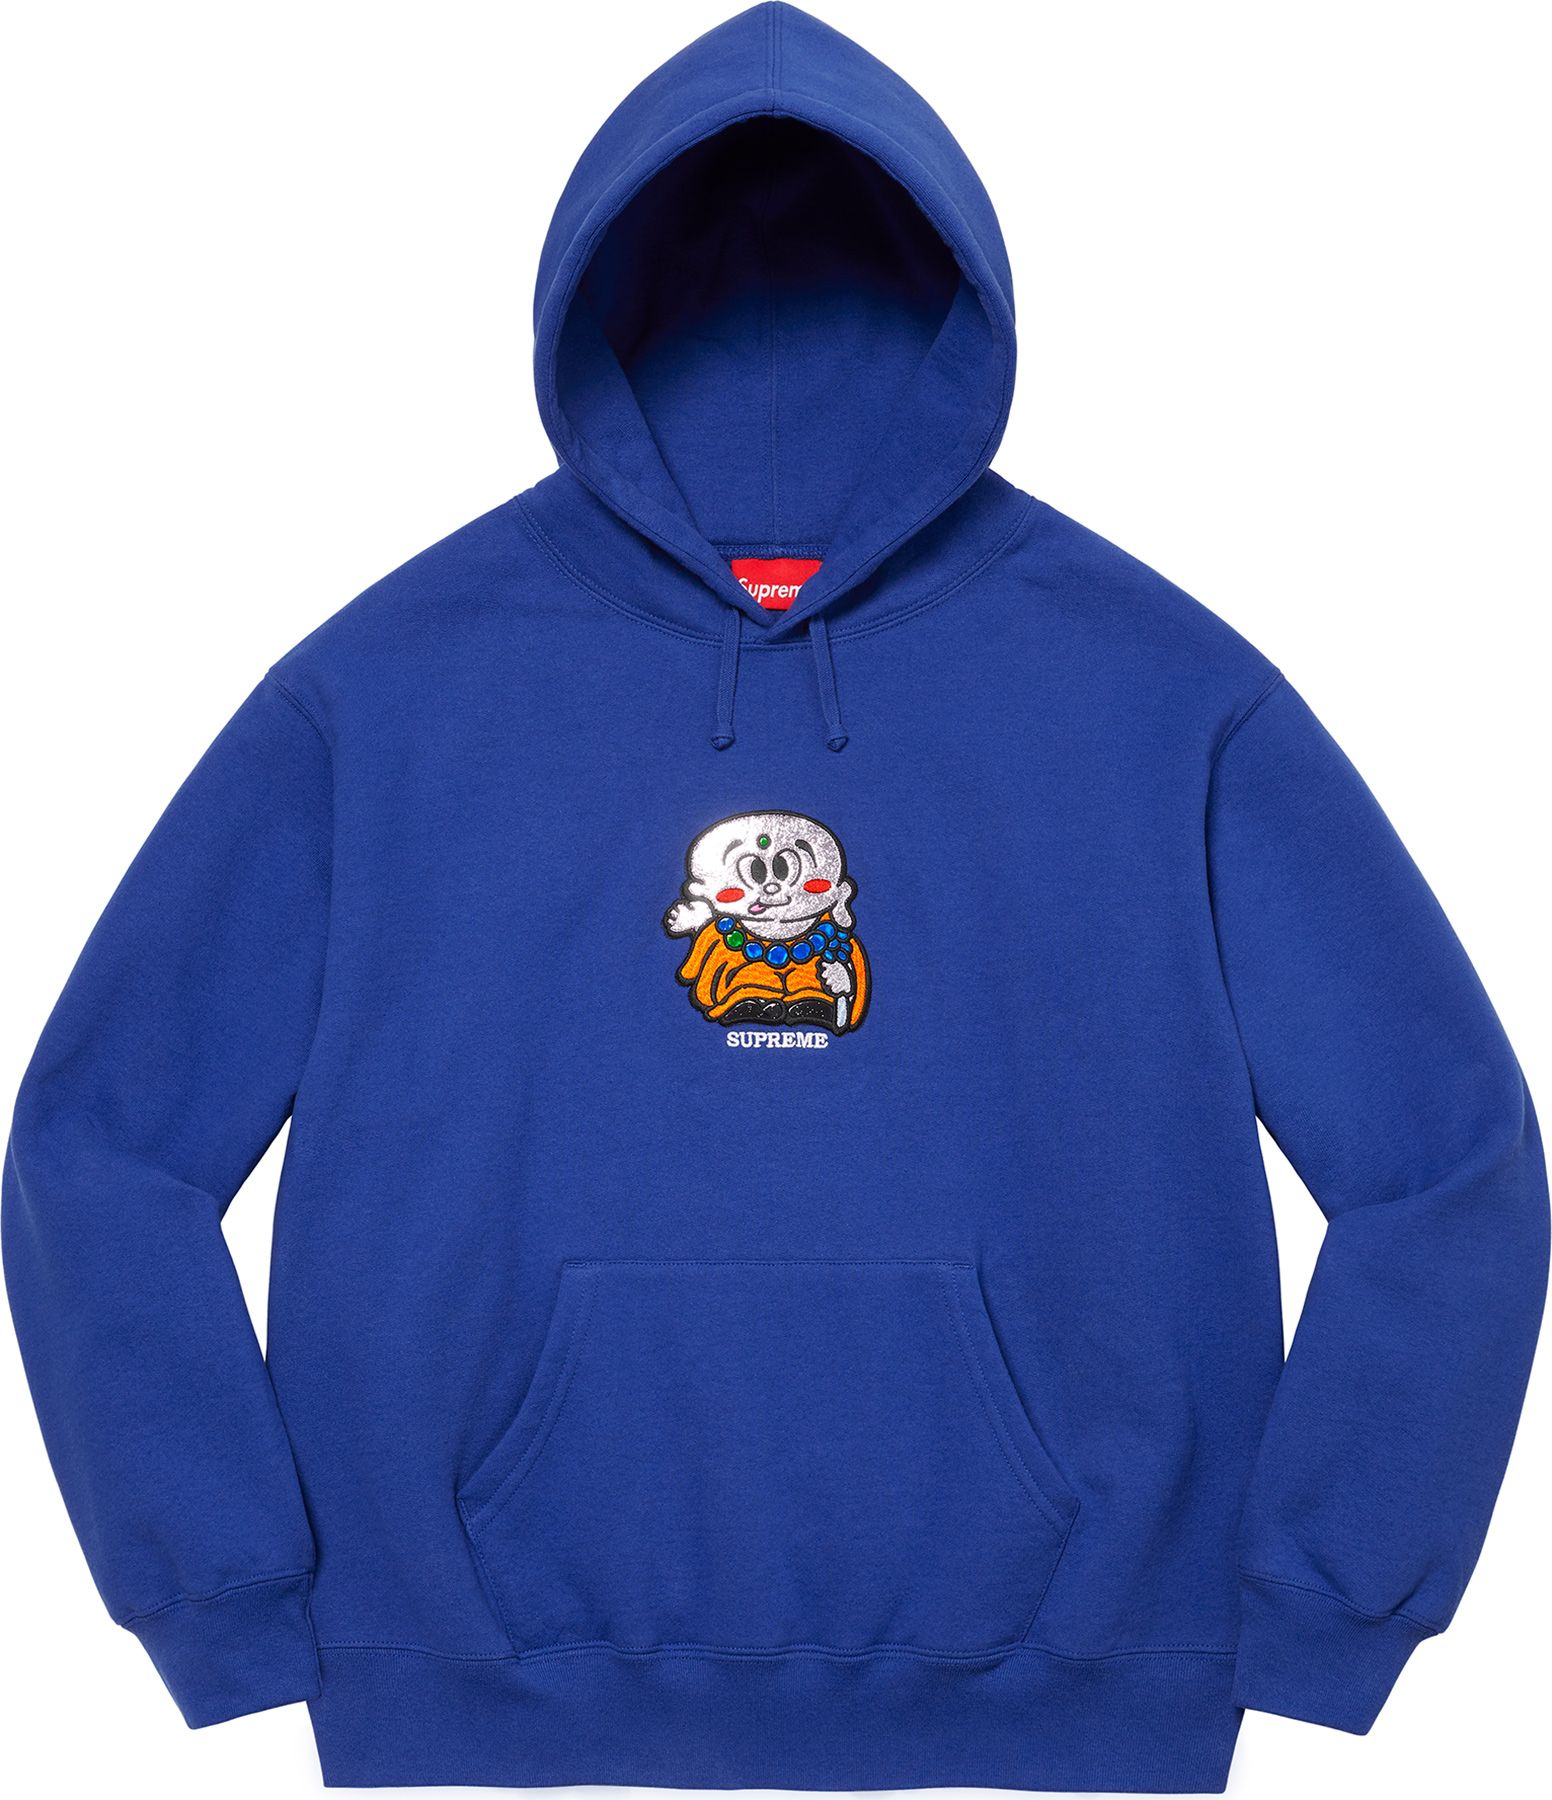 安心の日本製 Supreme Sweatshirt Worldwide Hooded Hooded Sweatshirt